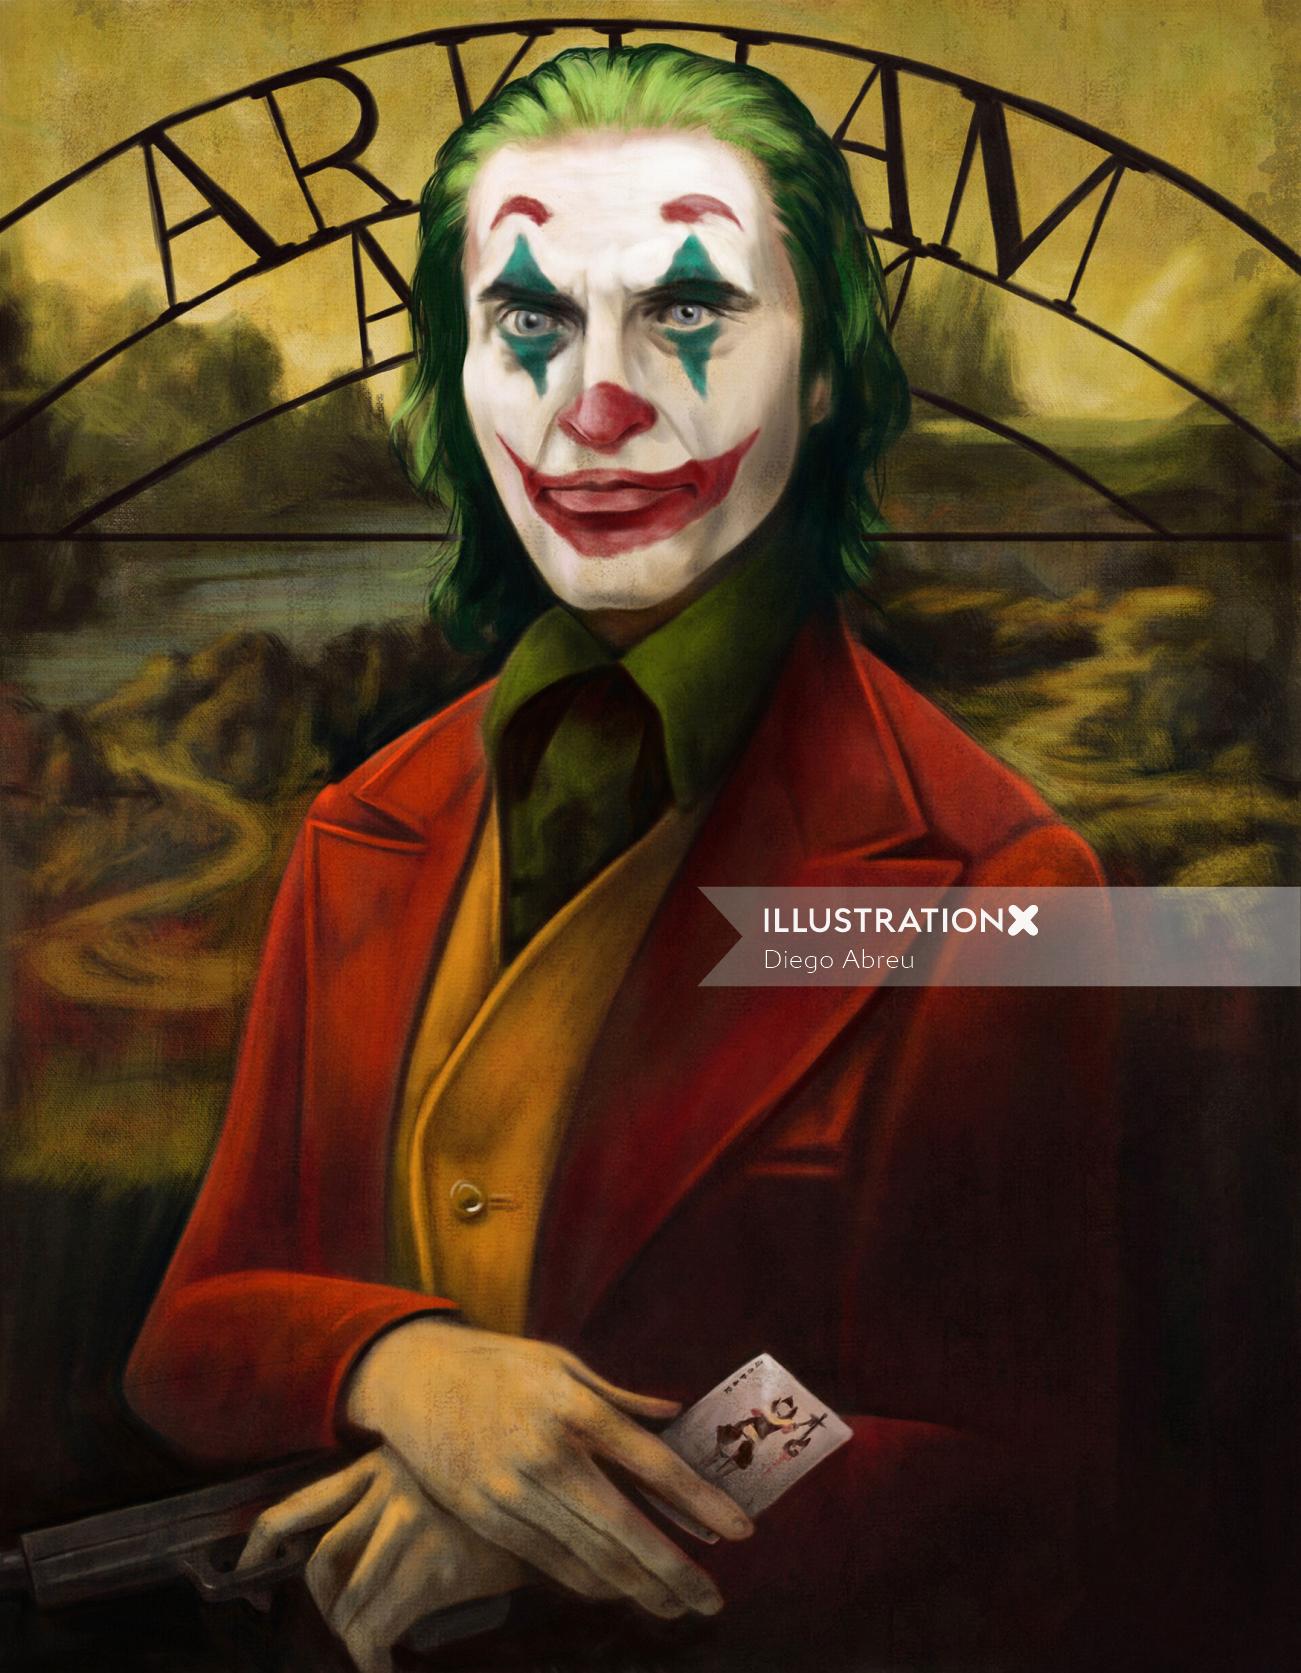 La Gioconda - Monalisa in Joker theme illustration